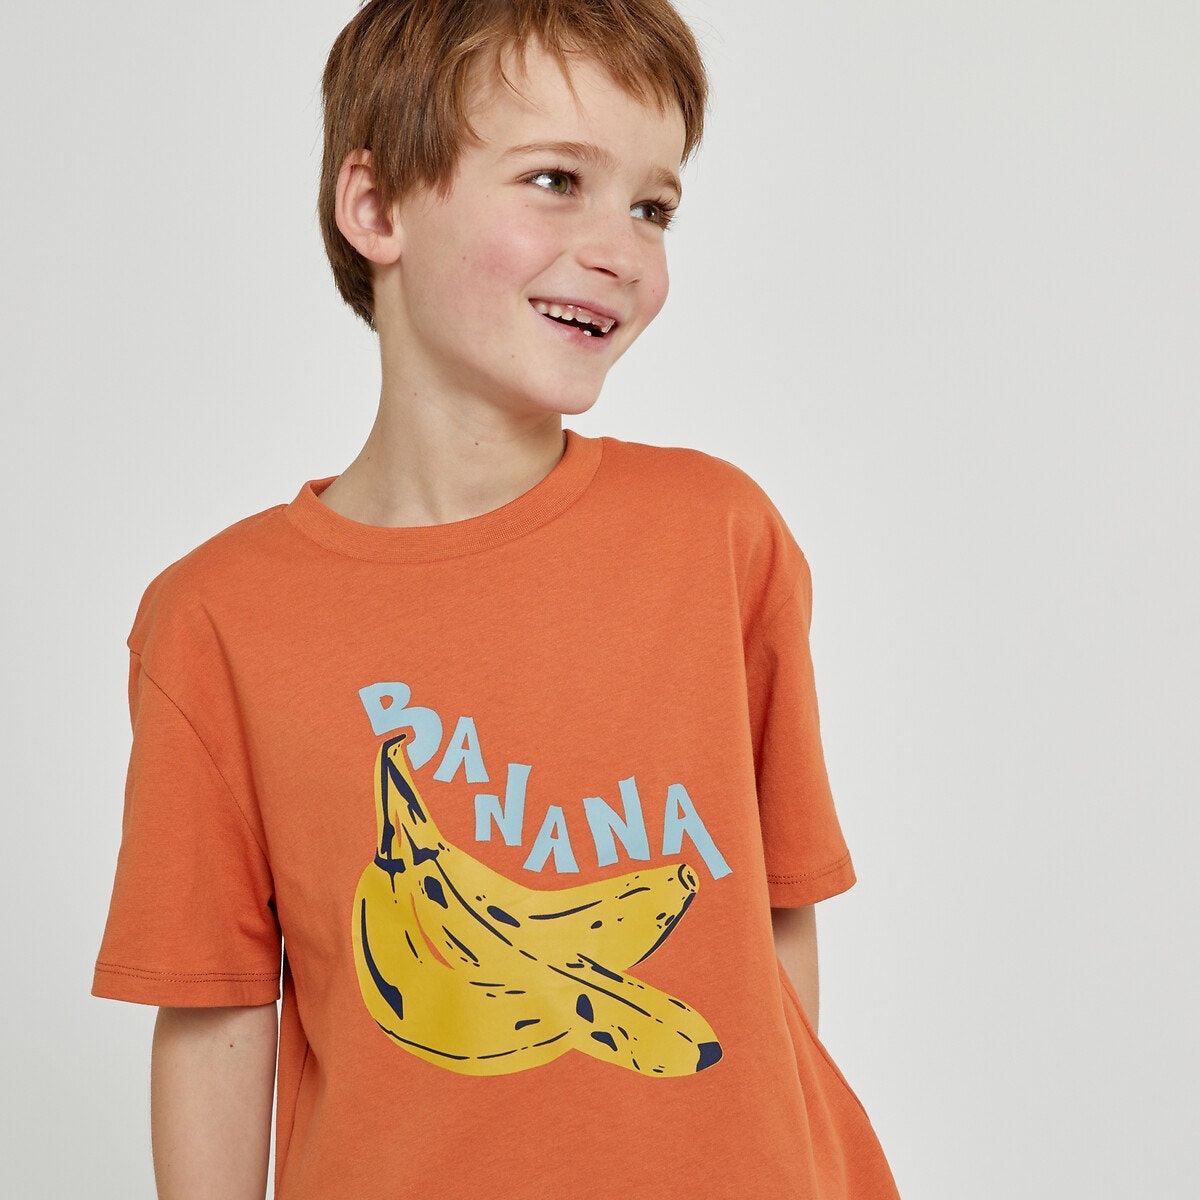 Μόδα > Παιδικά > Αγόρι > T-shirt, πόλο > Κοντά μανίκια Κοντομάνικο T-shirt oversize με στάμπα μπανάνες μπροστά